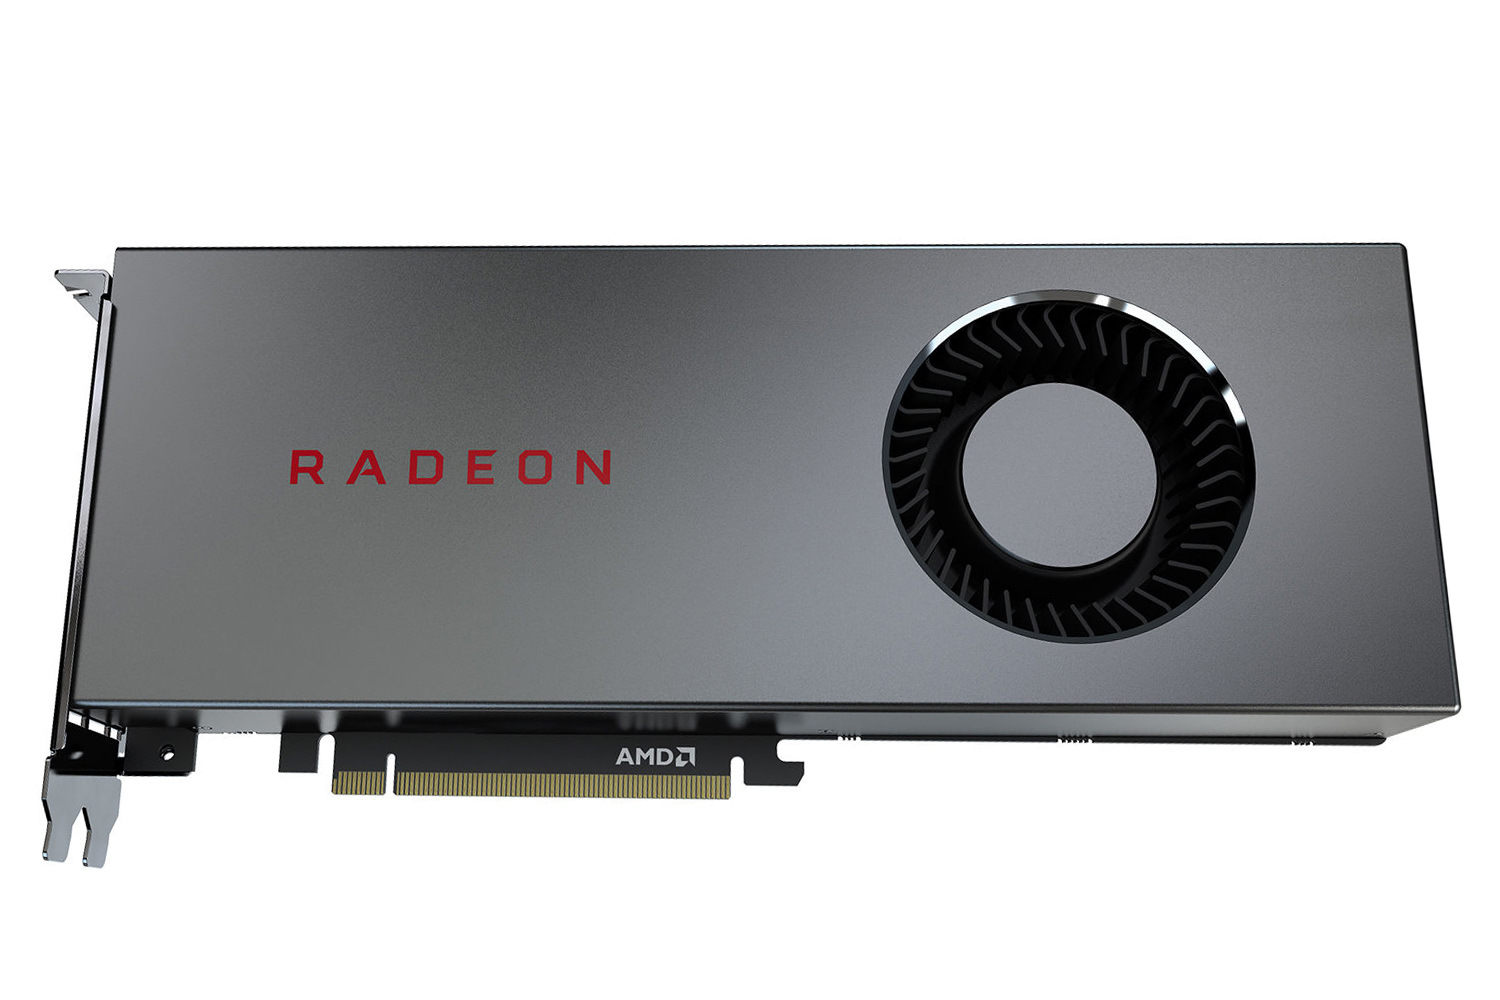 کارت گرافیک AMD Radeon RX 5700 نمای بالا -  فن خروجی هوا / AMD رادئون RX 5700